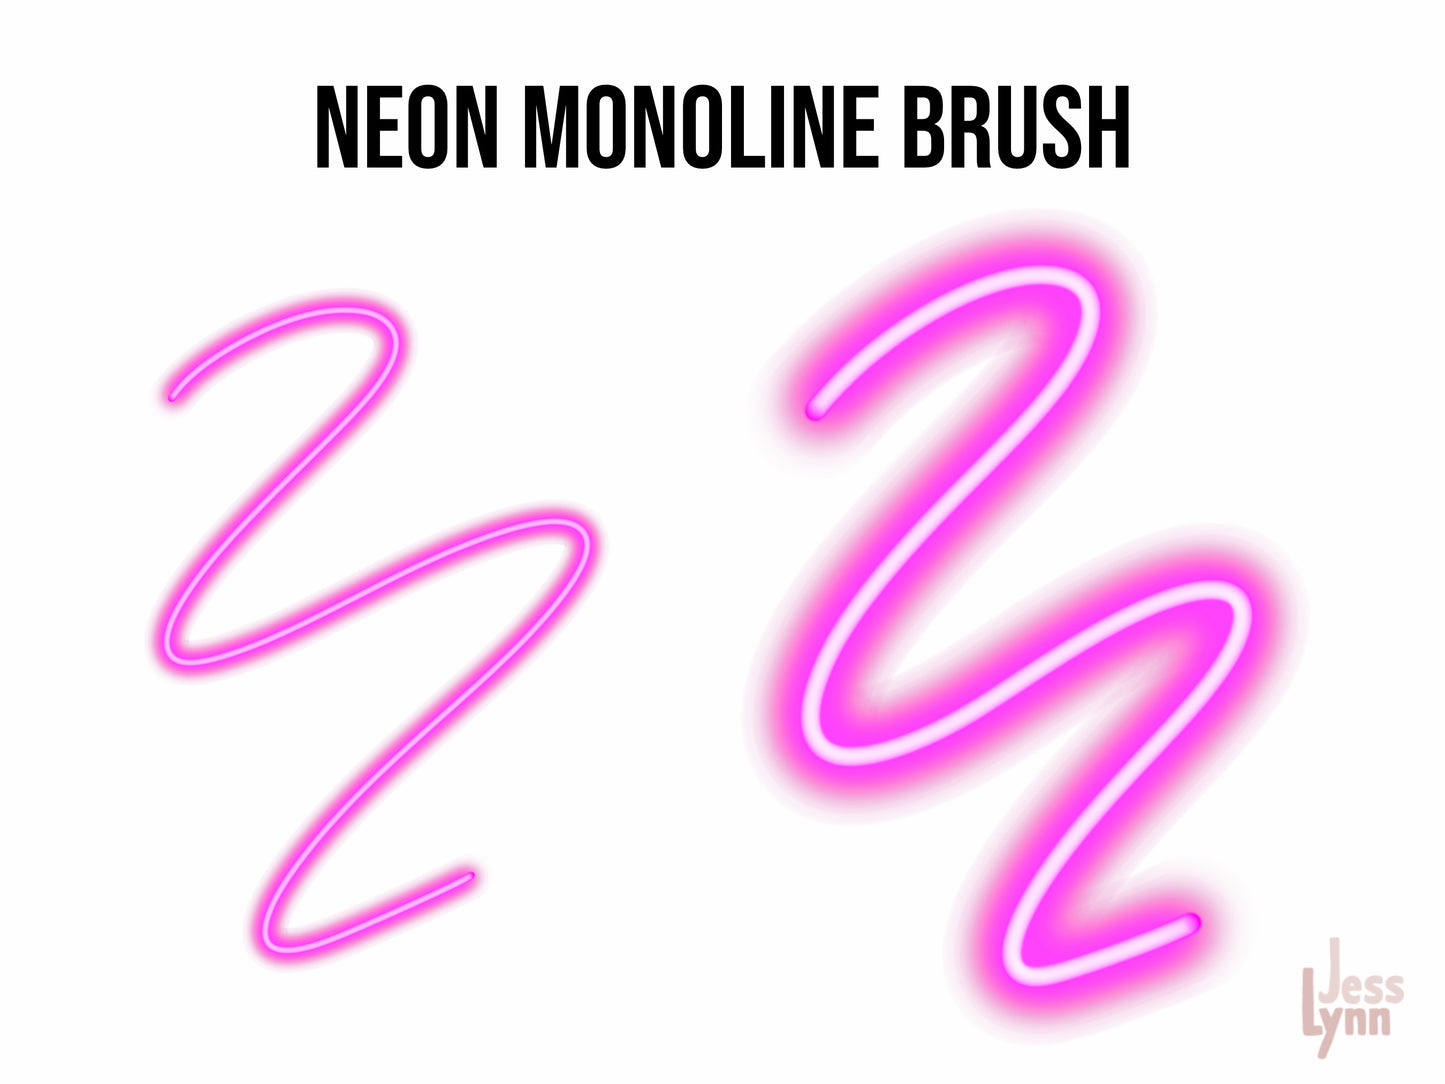 Neon Monoline Brush